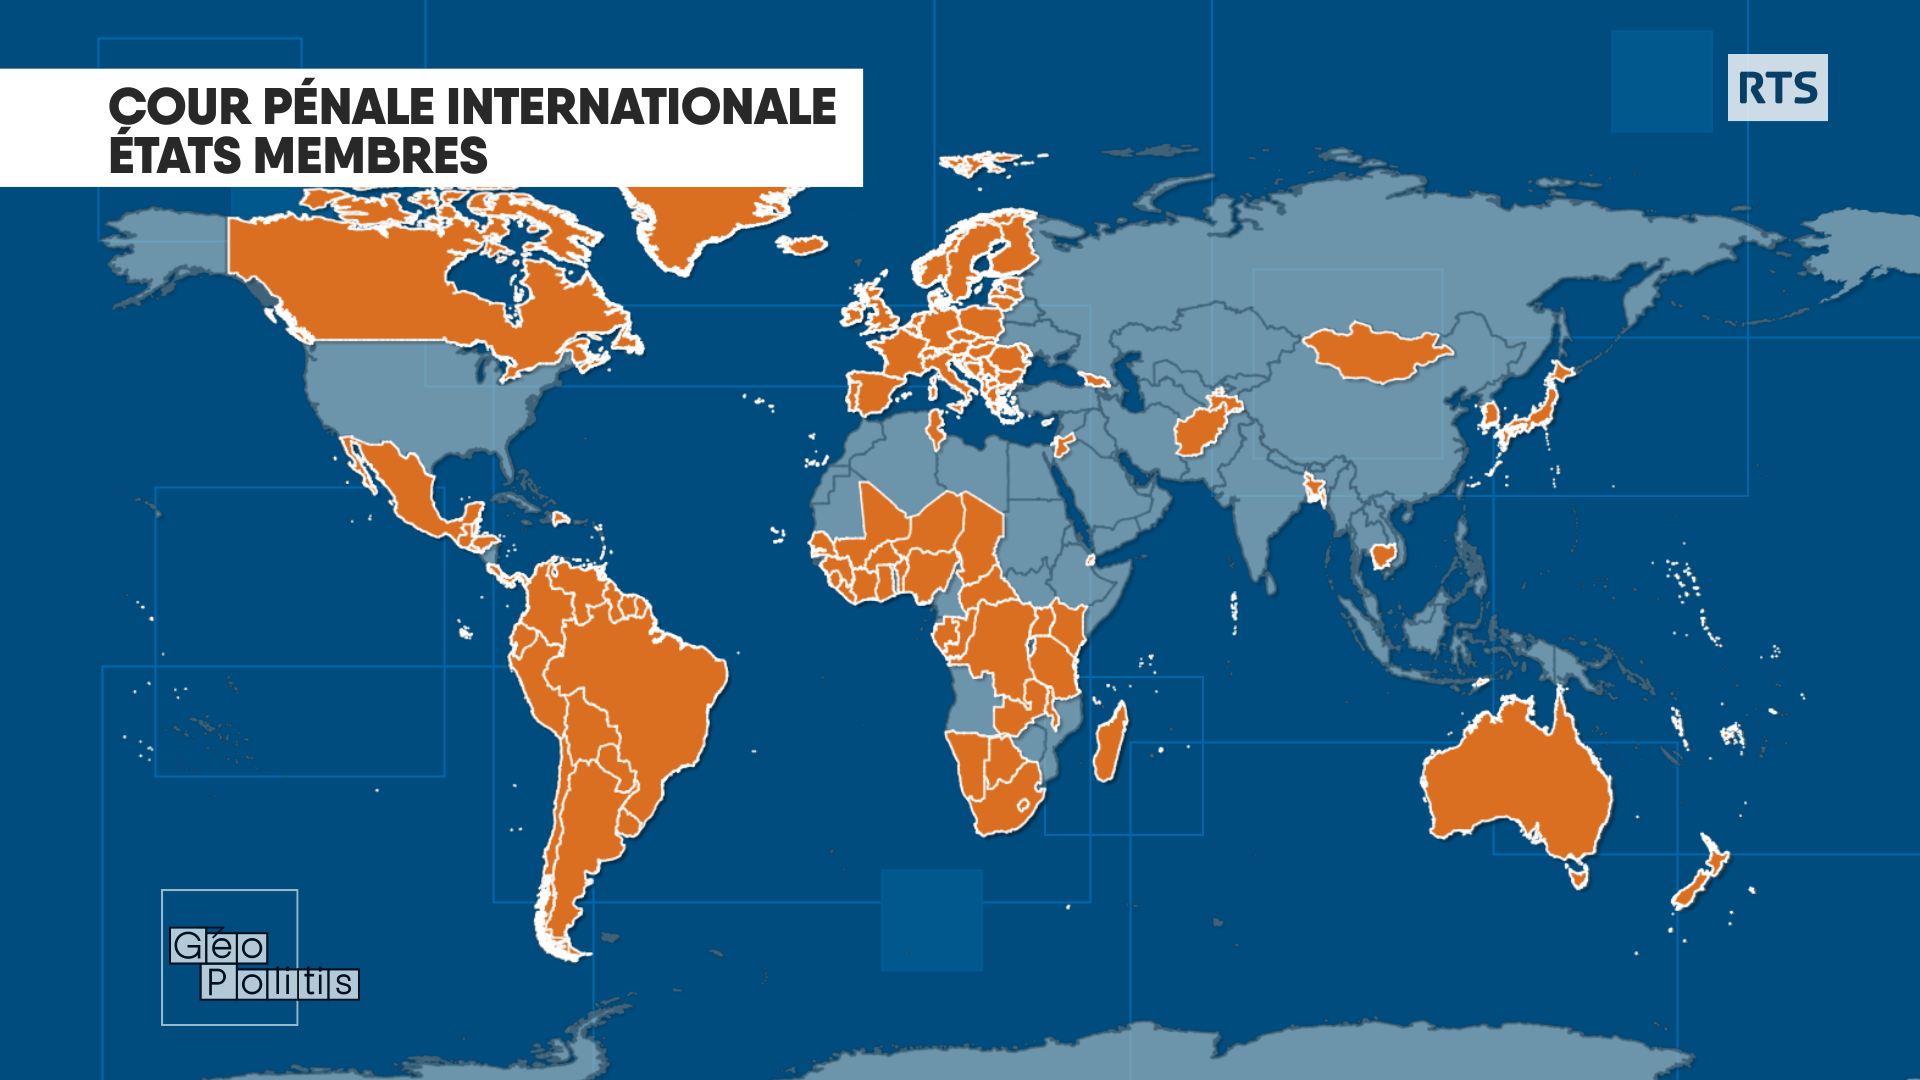 Les Etats membres de la Cour pénale internationale (CPI). [RTS - Géopolitis]